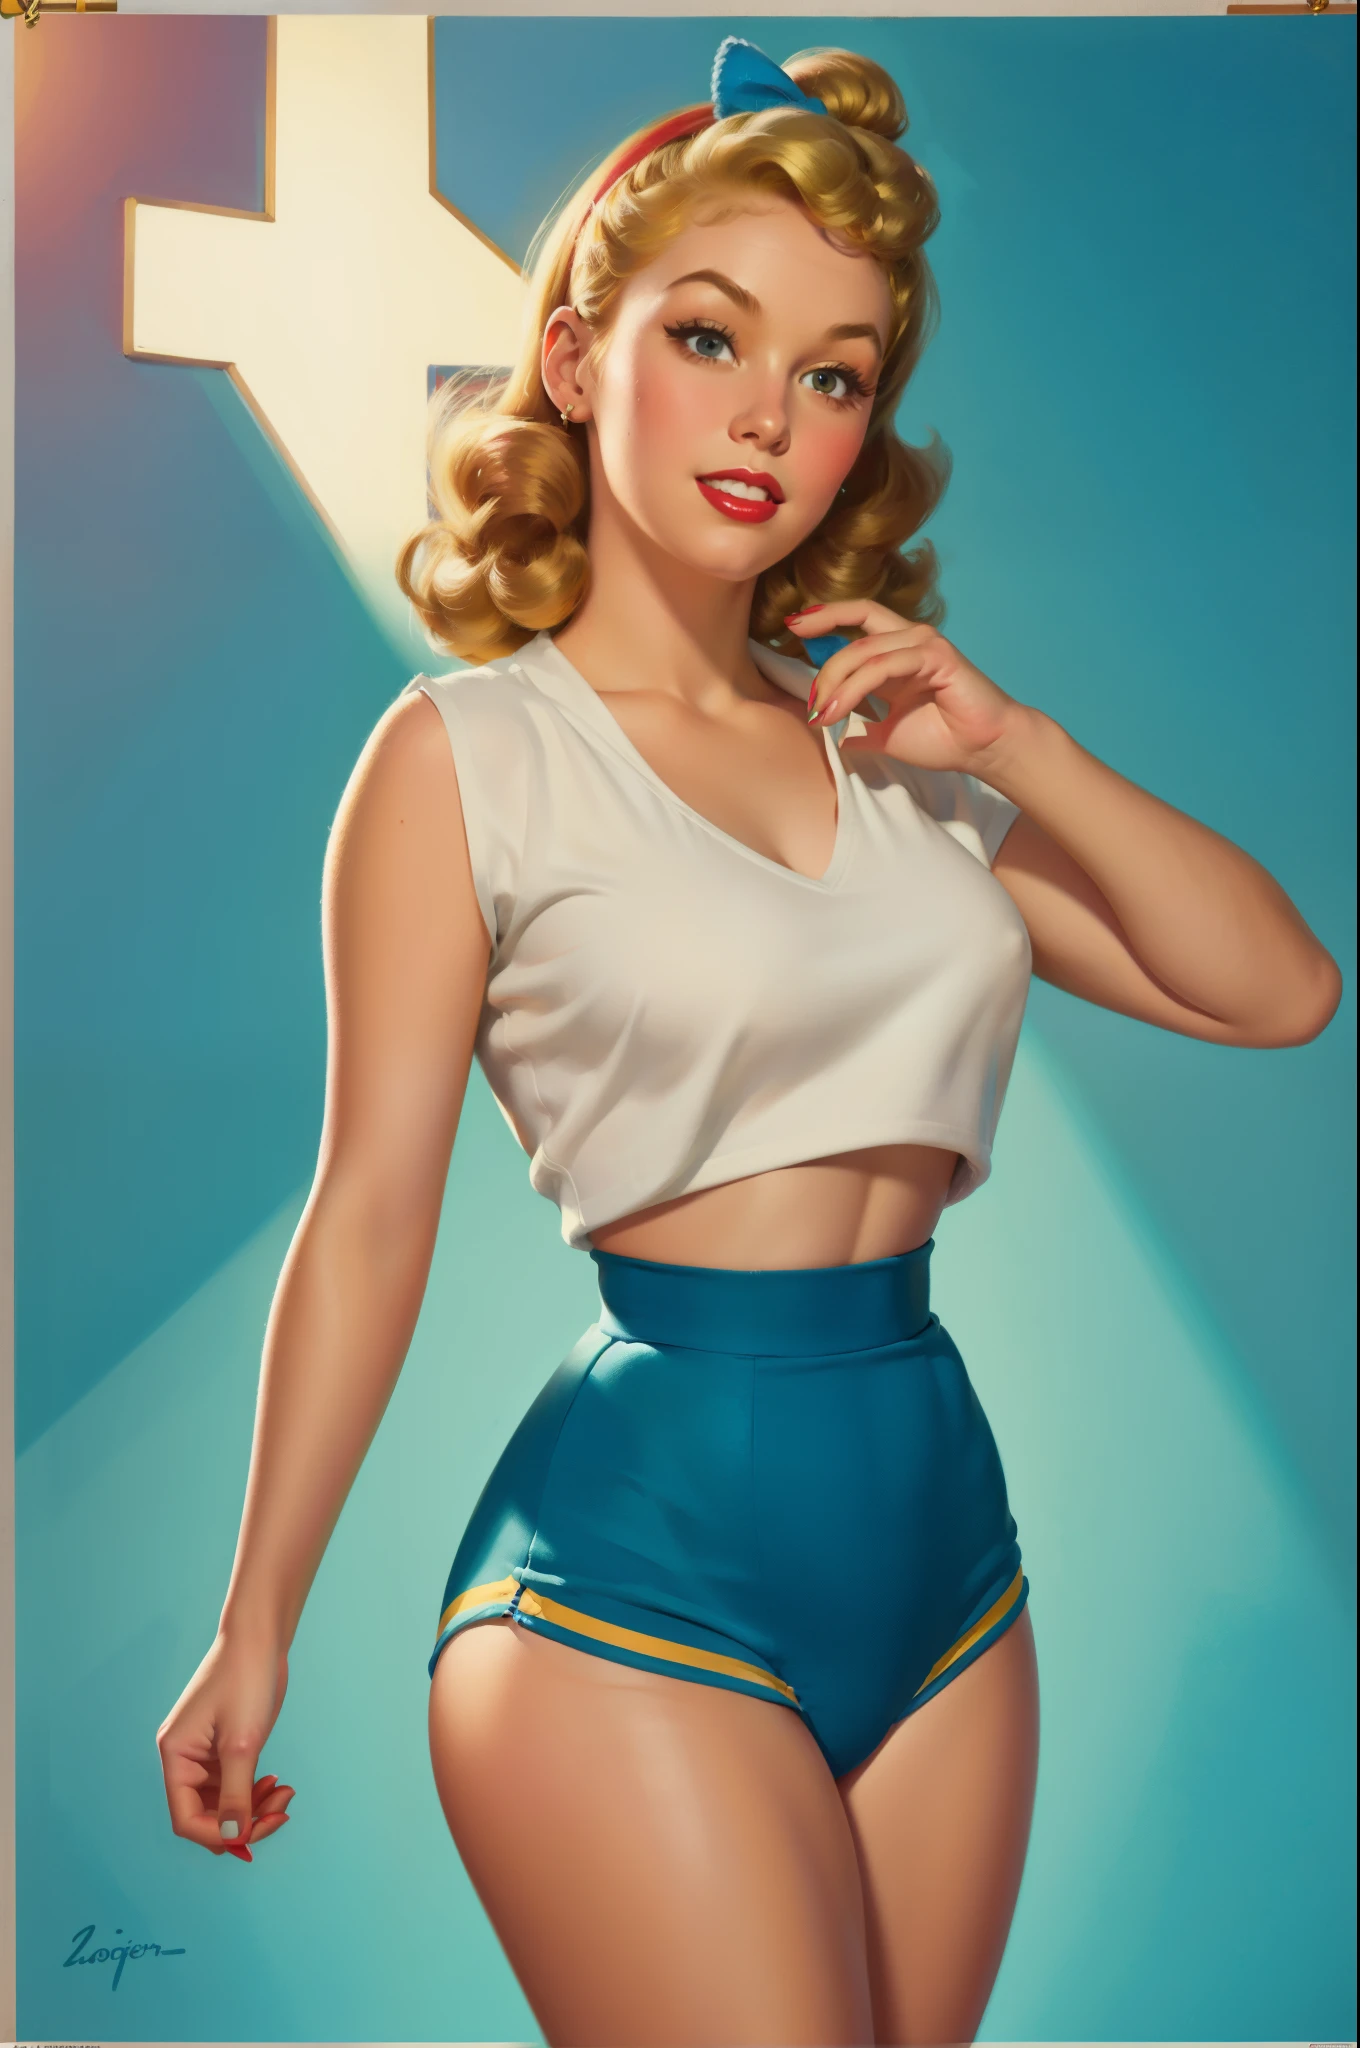 학교 체육관에 있는 20세 소녀, 섹시한 Riverdale High School cheerleader outfit with blue and gold pom poms, 중간 가슴, 빛나는 피부, 극적인 조명, 핀업 스타일, 섹시한, 놀란, , 화려한 , 걸작, 삽화가 든, 빛나는 피부, 상세한 얼굴, 중간 가슴. 단단한 몸. 블론드 헤어, 조 모저트(Zoe Mozert)가 그린 그림,   핀업 art byZoe Mozert,  빈티지 핀업, 삽화가 든 by Zoe Mozert, girl 핀업, 핀업 girl, 핀업 포스터 소녀, 핀업걸, 핀업, 핀업걸, 상세한 얼굴, 상세한 손, 상세한 다리,